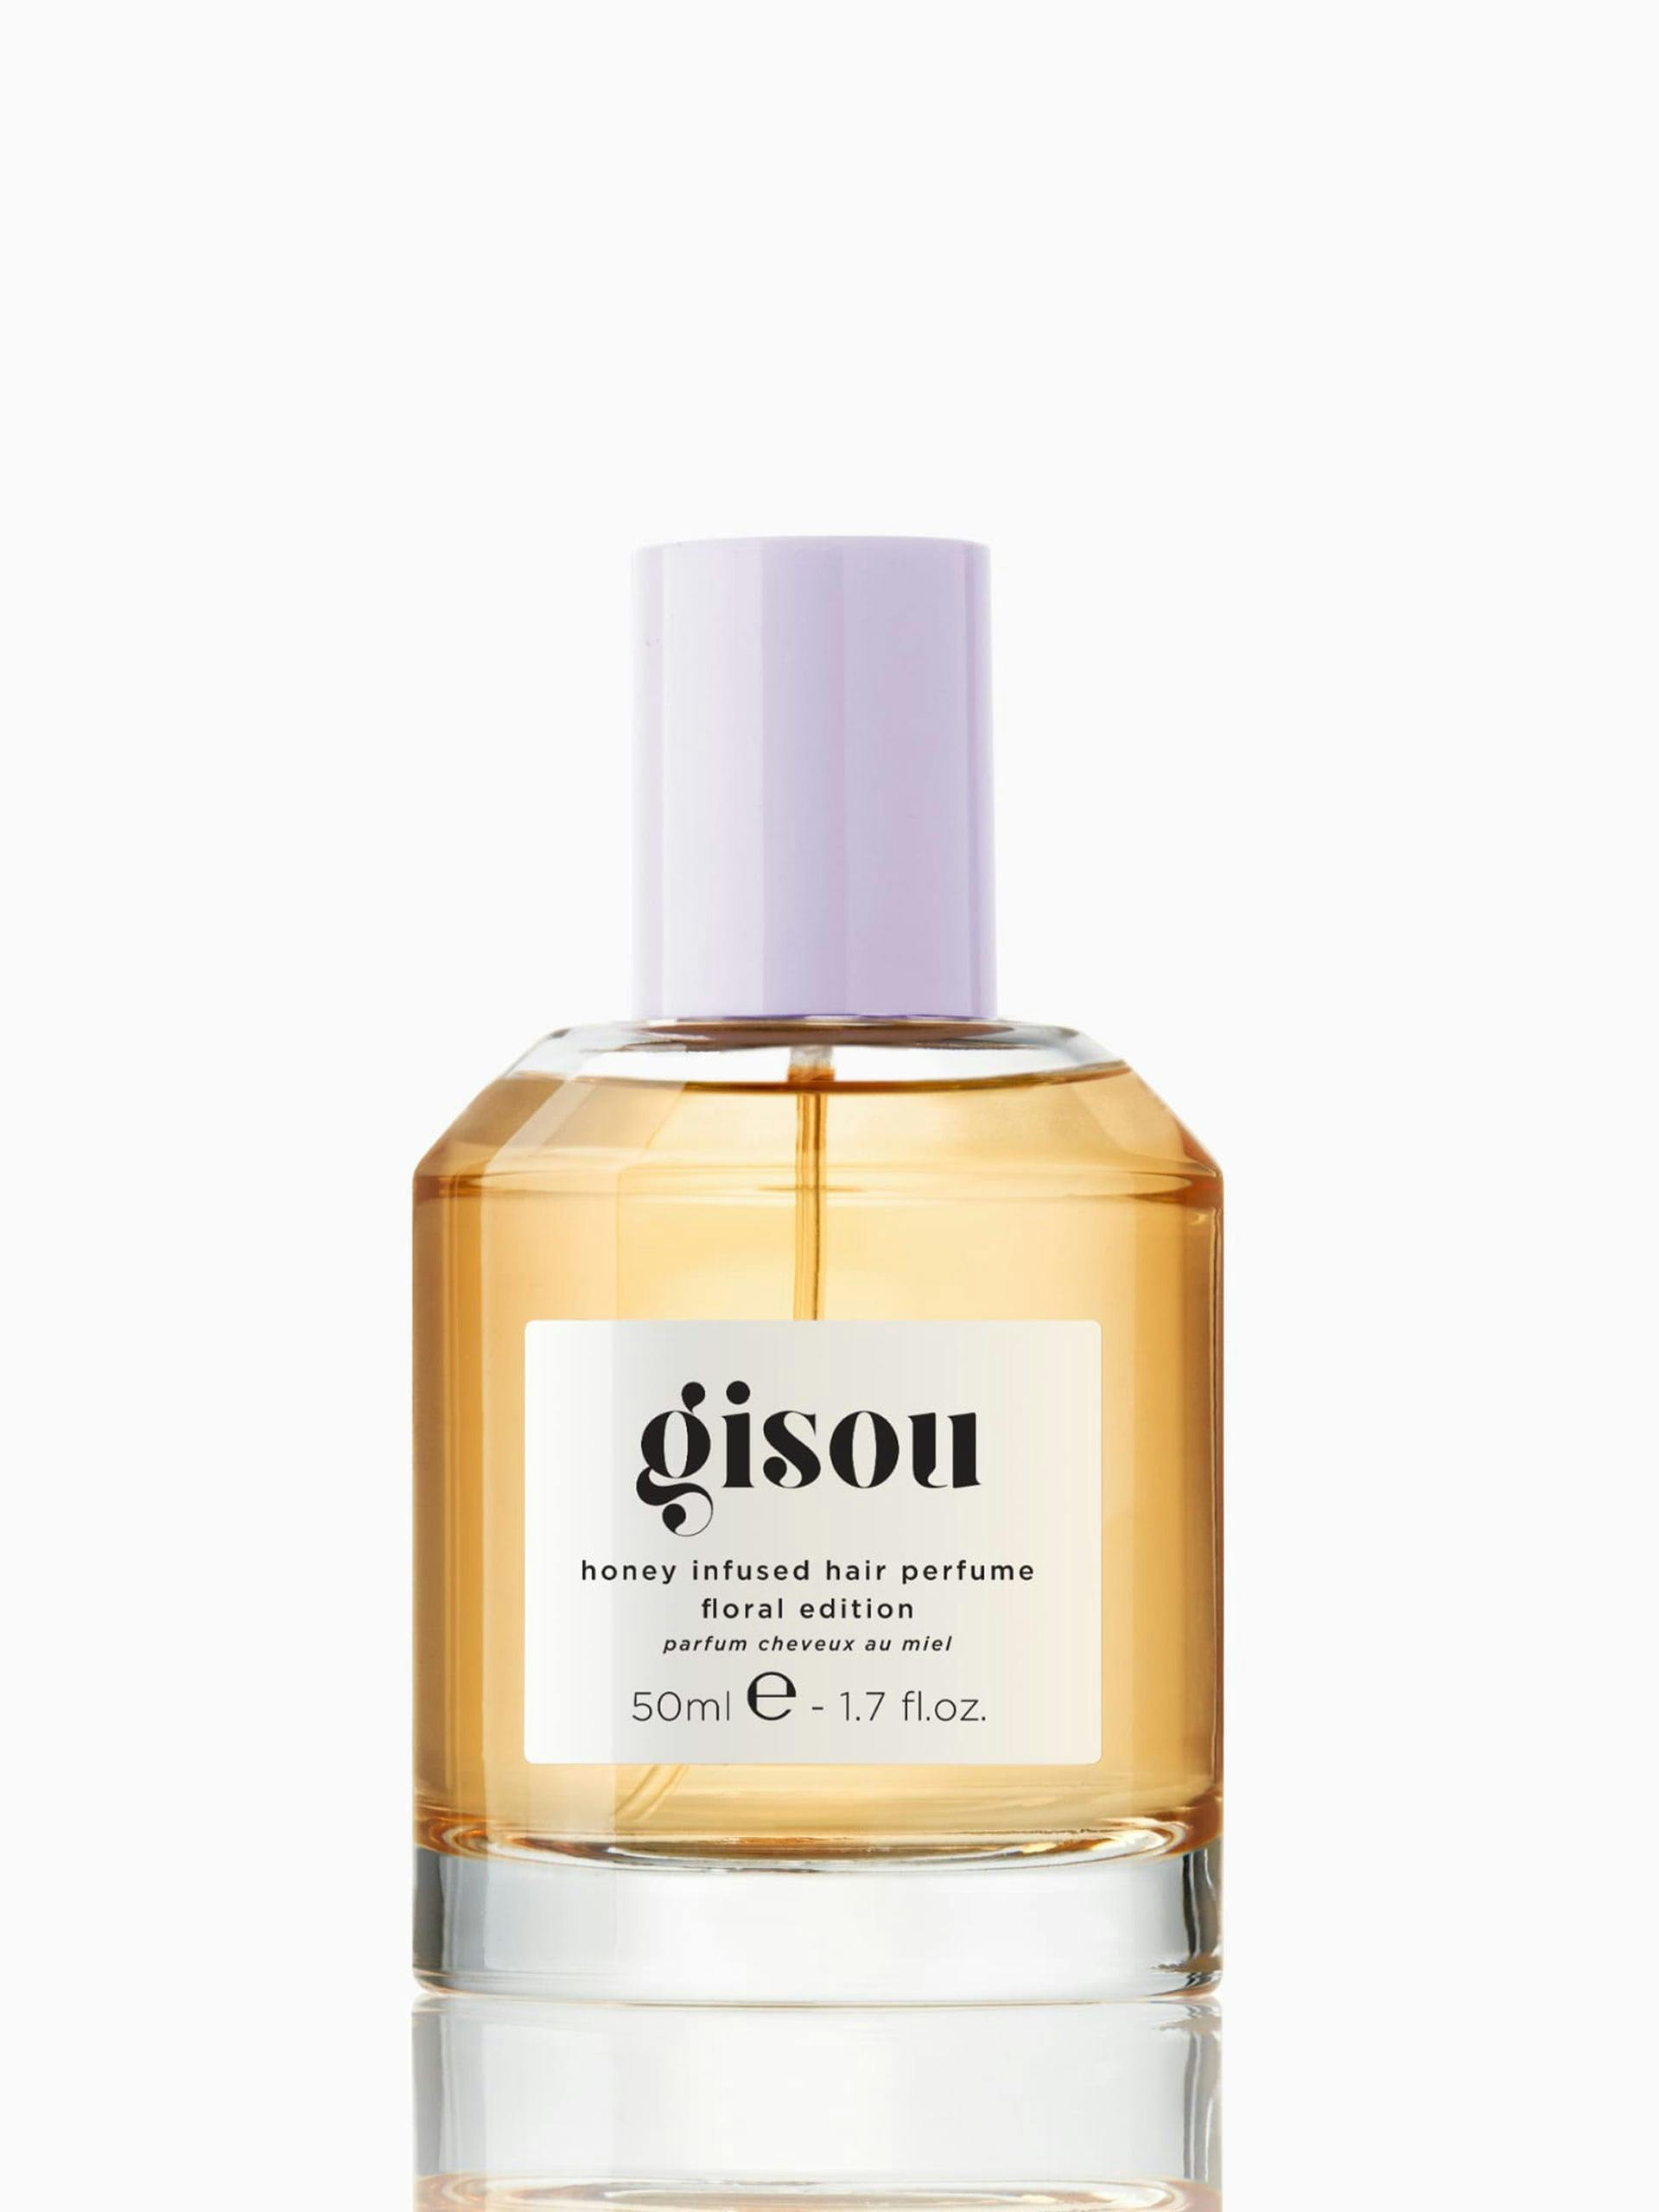 Honey infused hair perfume